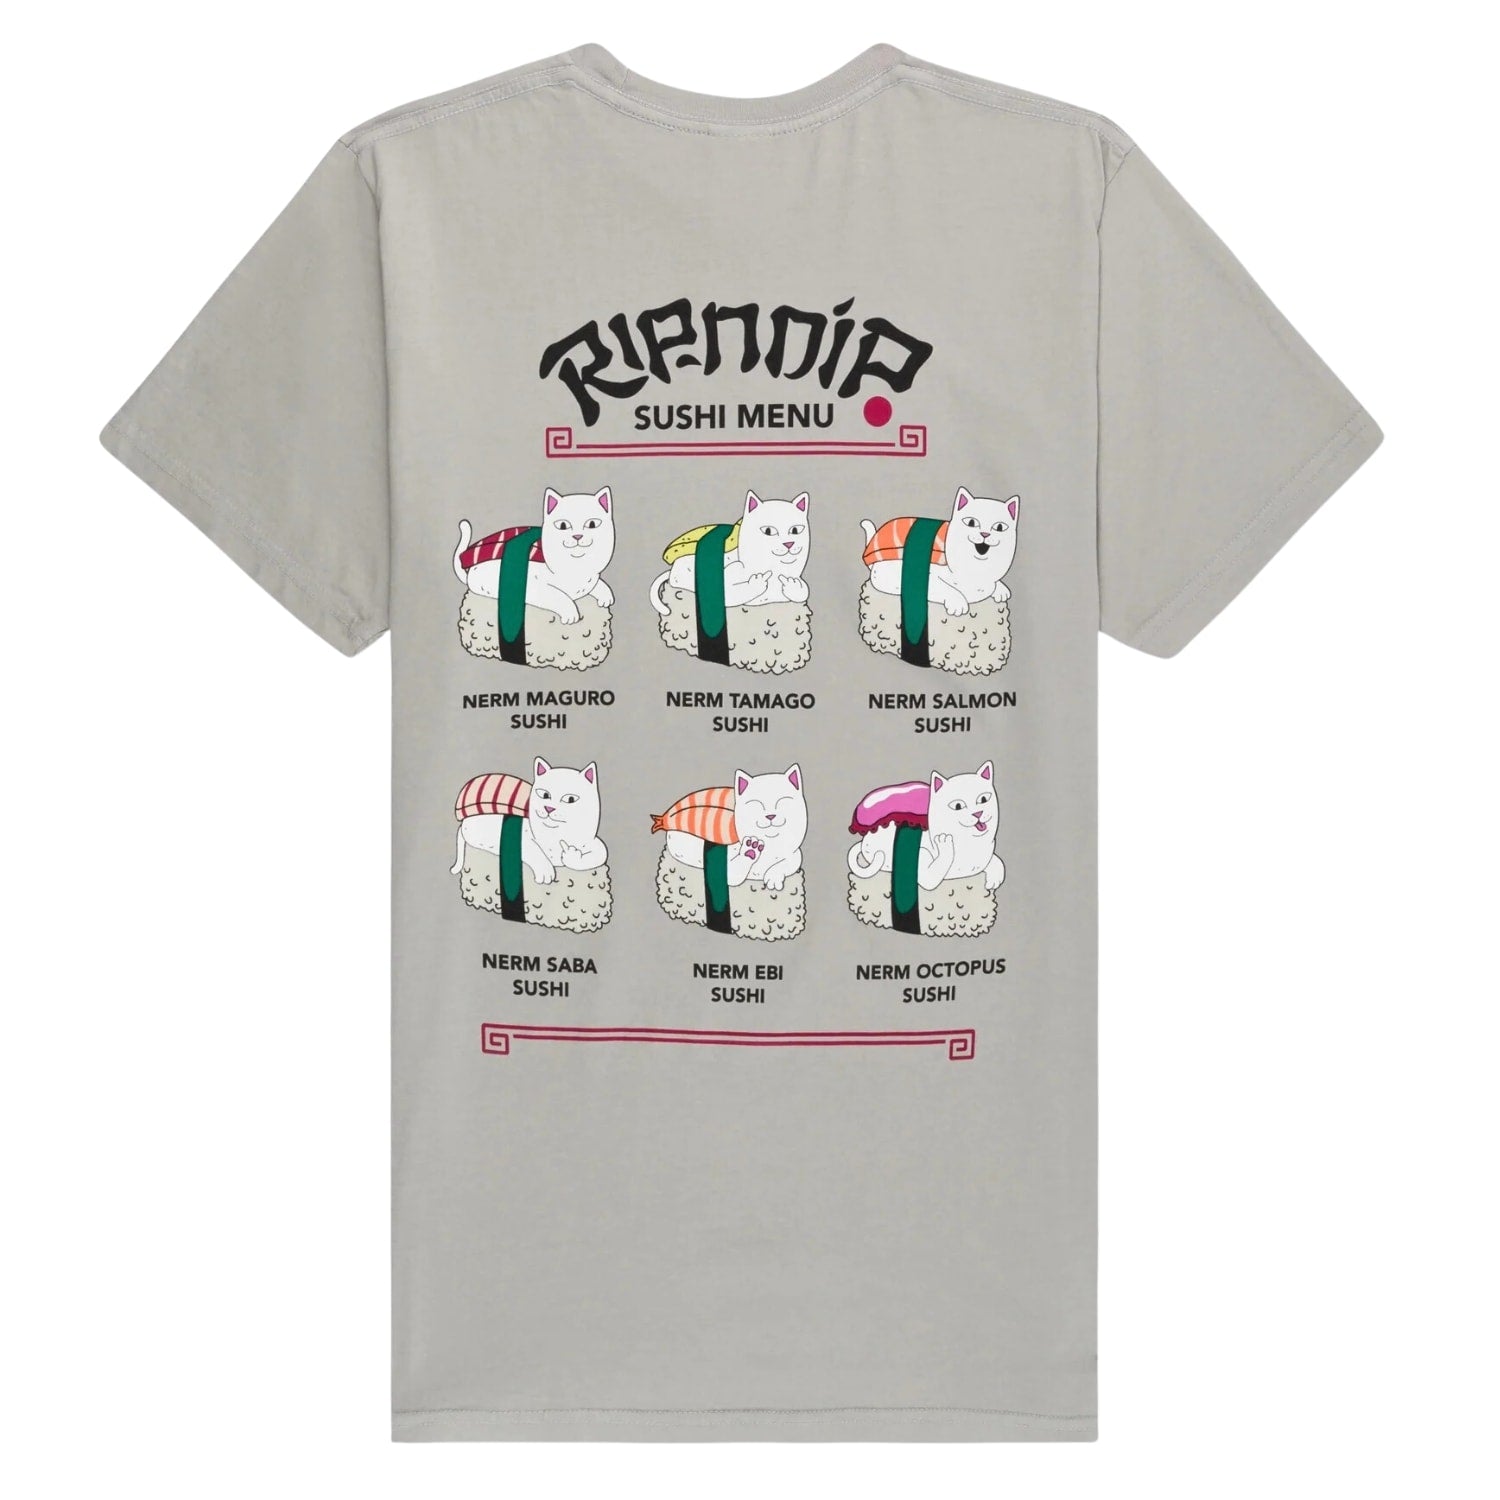 Ripndip Sushi Nerm T-Shirt - Grey - Mens Graphic T-Shirt by RIPNDIP